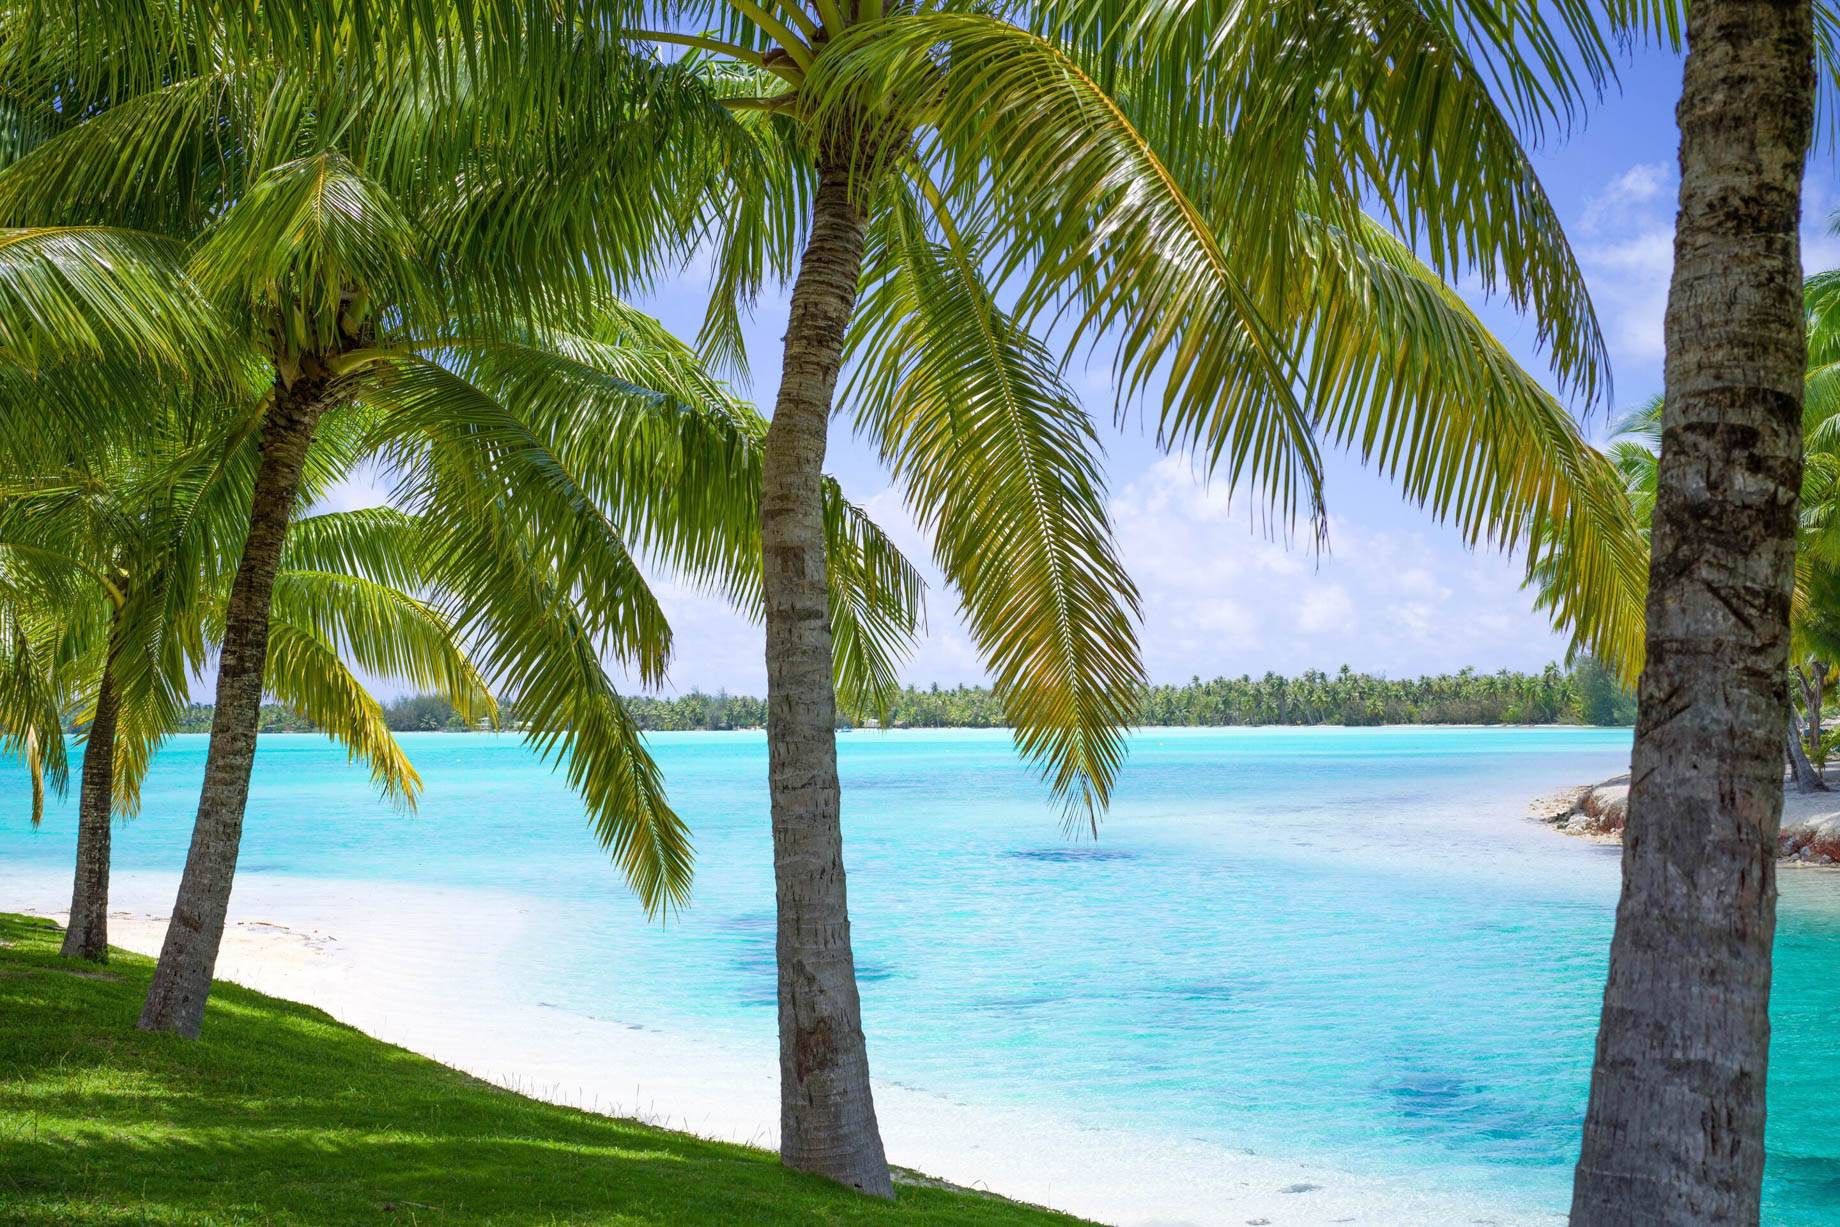 The St. Regis Bora Bora Resort - Bora Bora, French Polynesia - Palm Trees